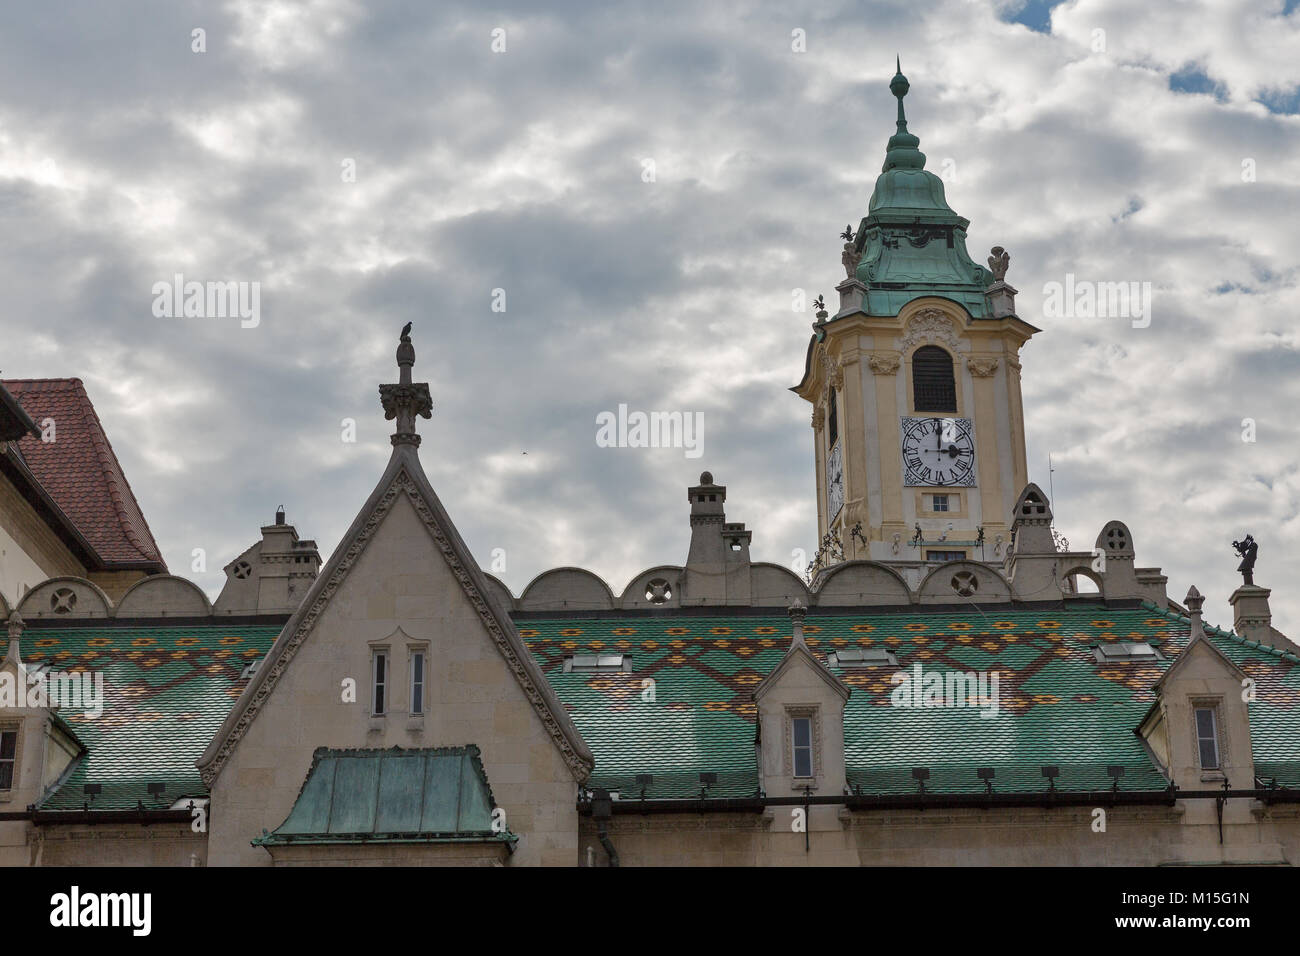 Altes Rathaus turm und das Museum der Geschichte der Stadt an Primacialne Namestie (Primas Square) in Bratislava, Slowakei. Stockfoto